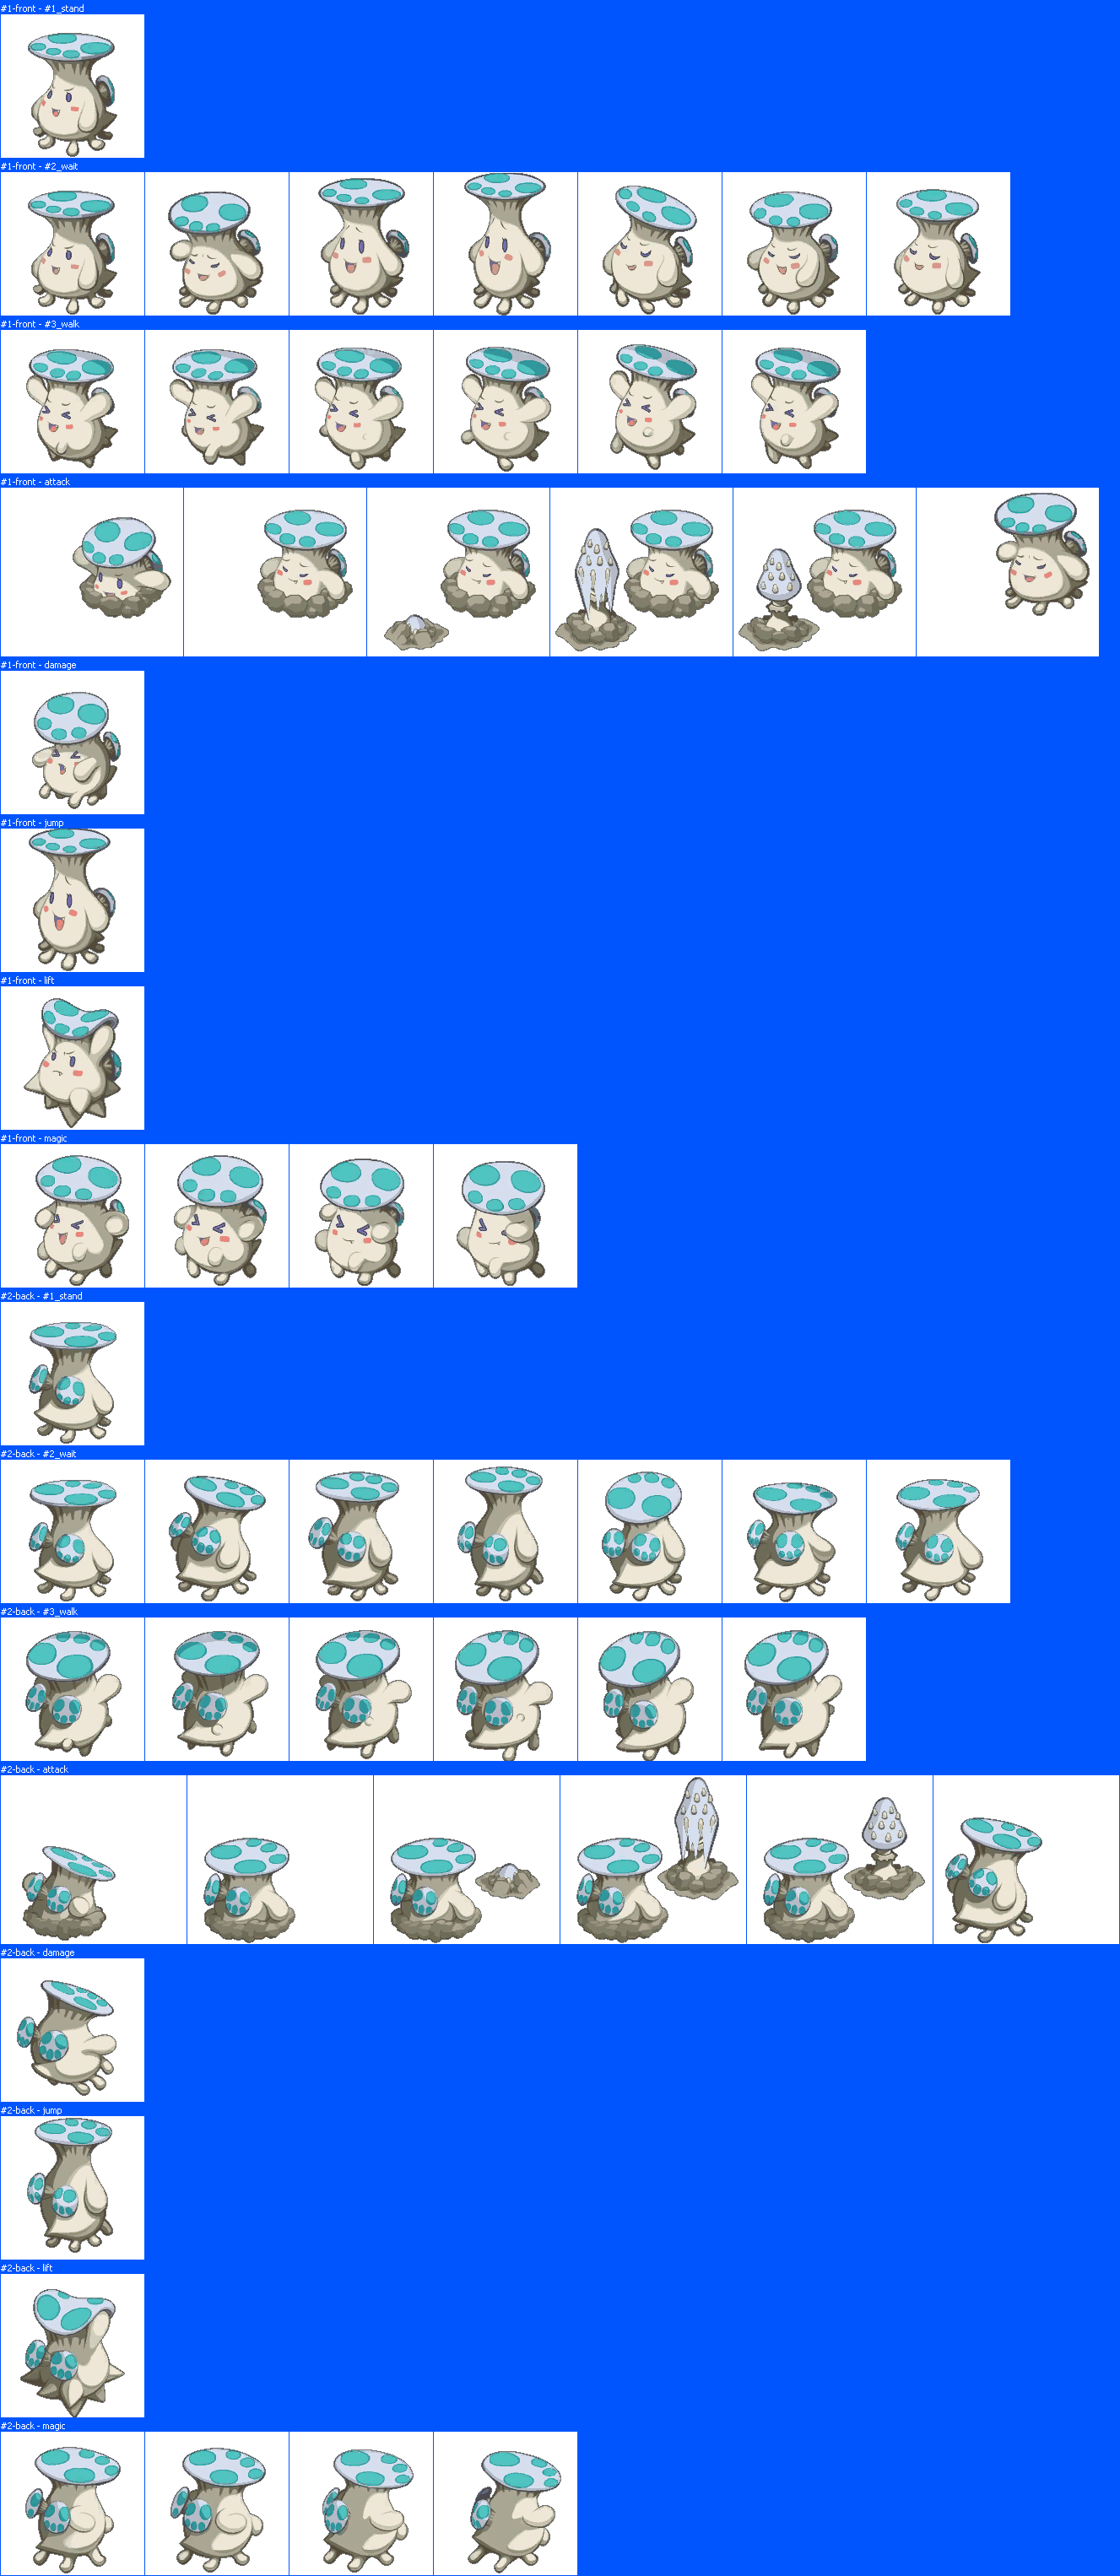 Disgaea RPG - Shroom (Blue)